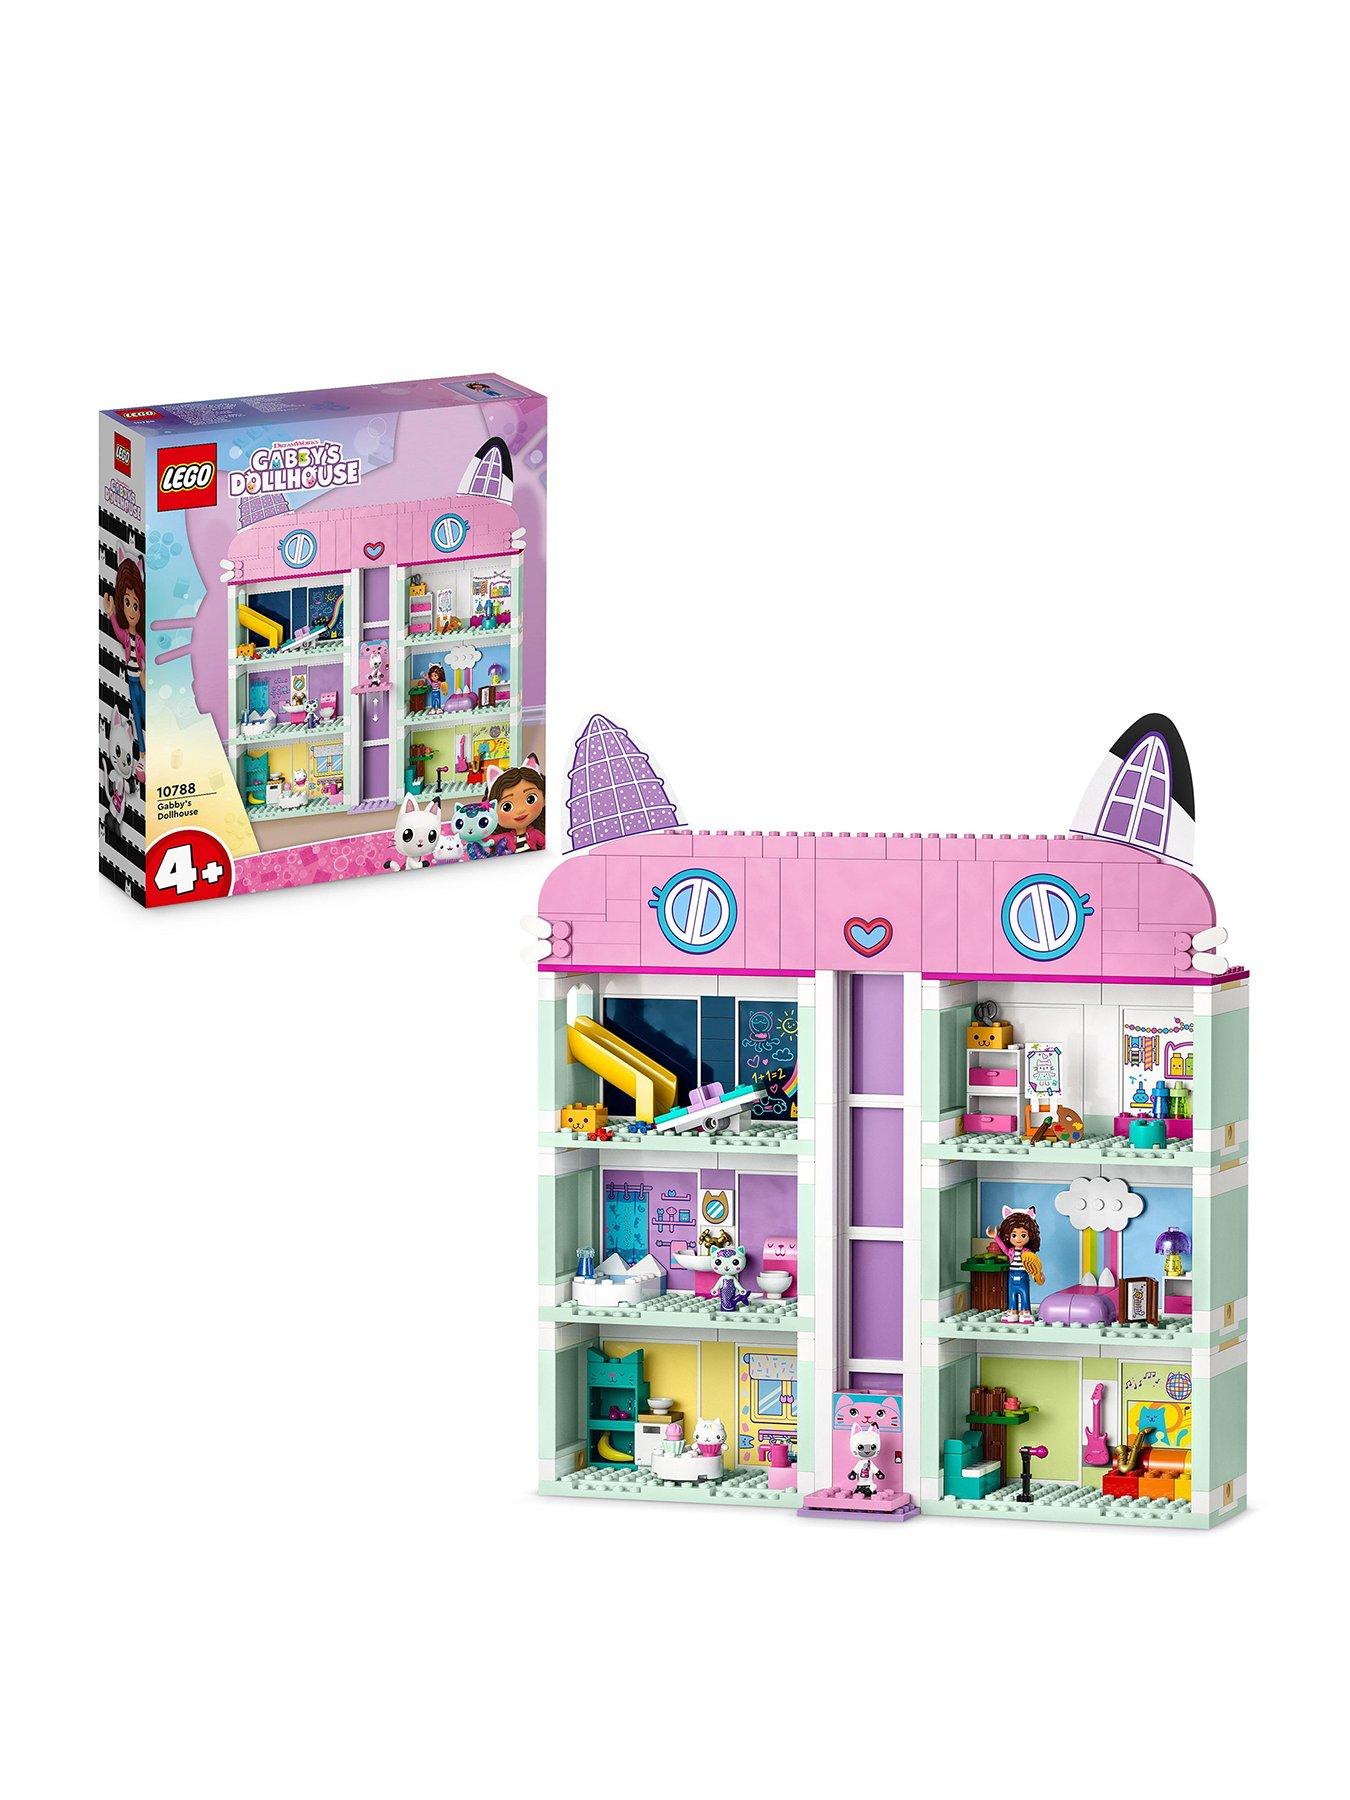 LEGO Gabby's Dollhouse Gabby's Dollhouse Toy Playset + Figures